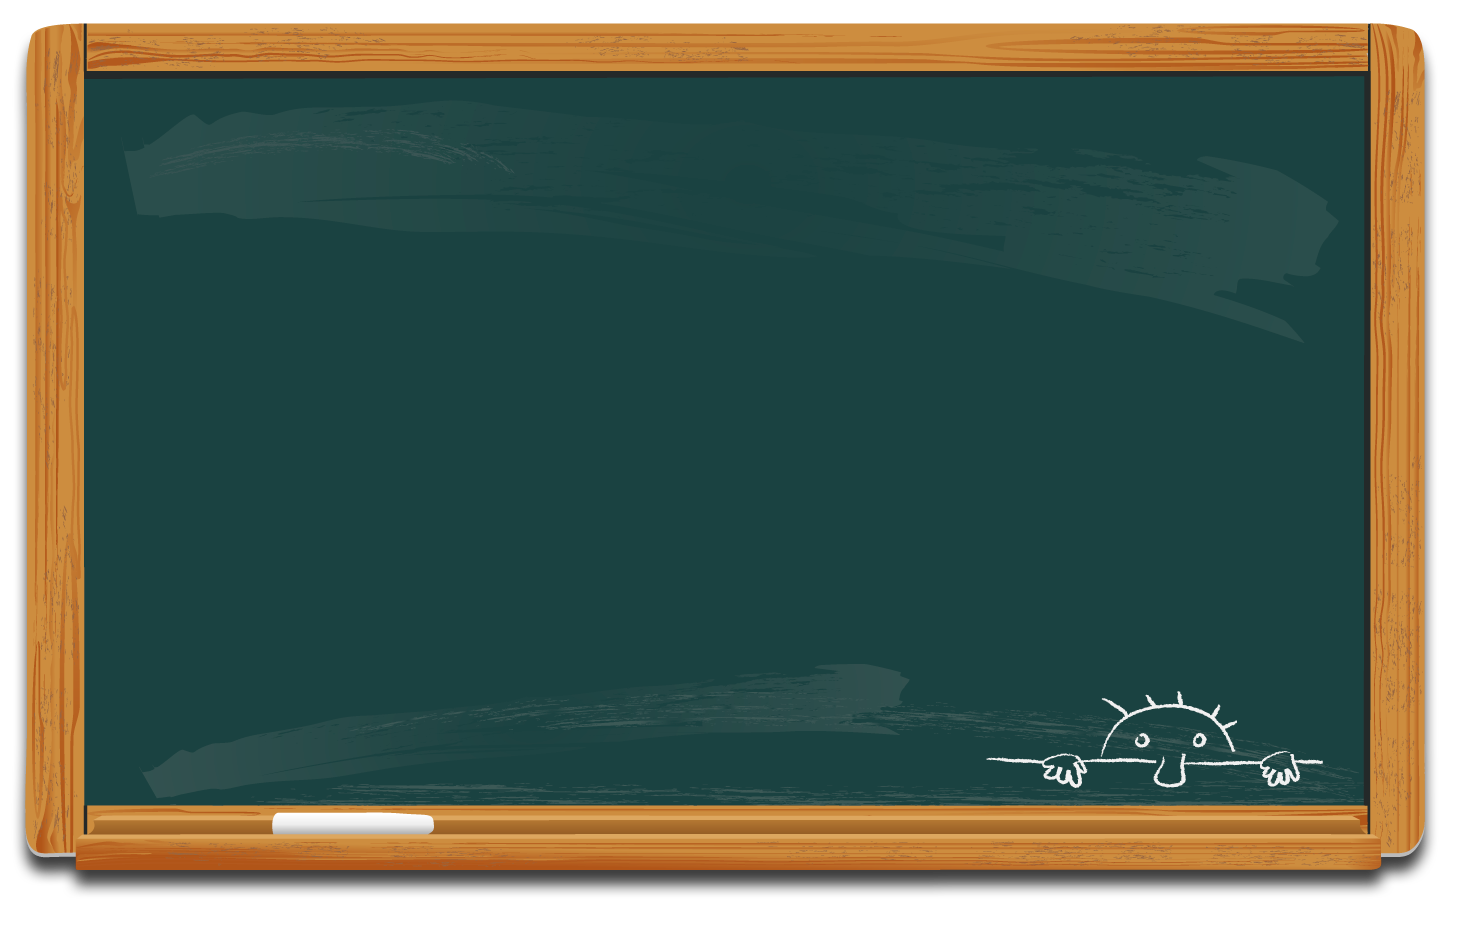 chalkboard powerpoint template